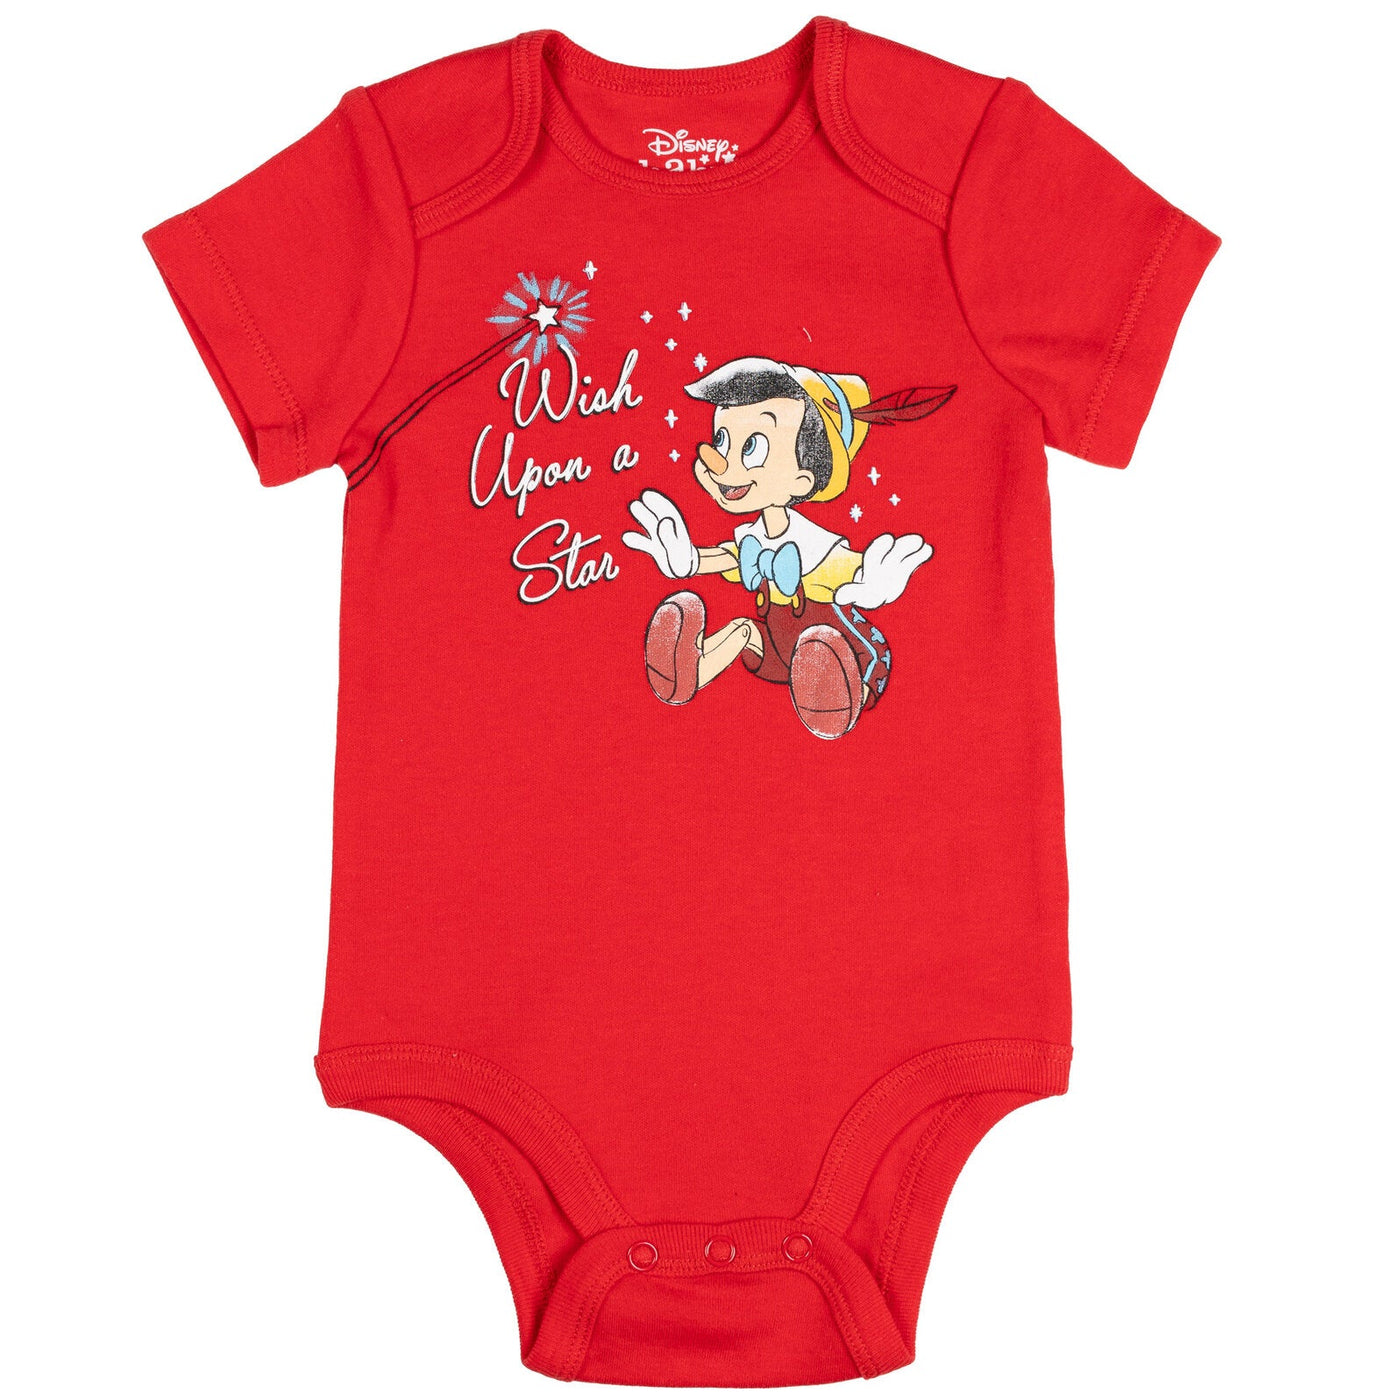 Disney Classics Baloo Dumbo Peter Pan Pinocchio Baby 5 Pack Bodysuits Newborn to Infant - imagikids